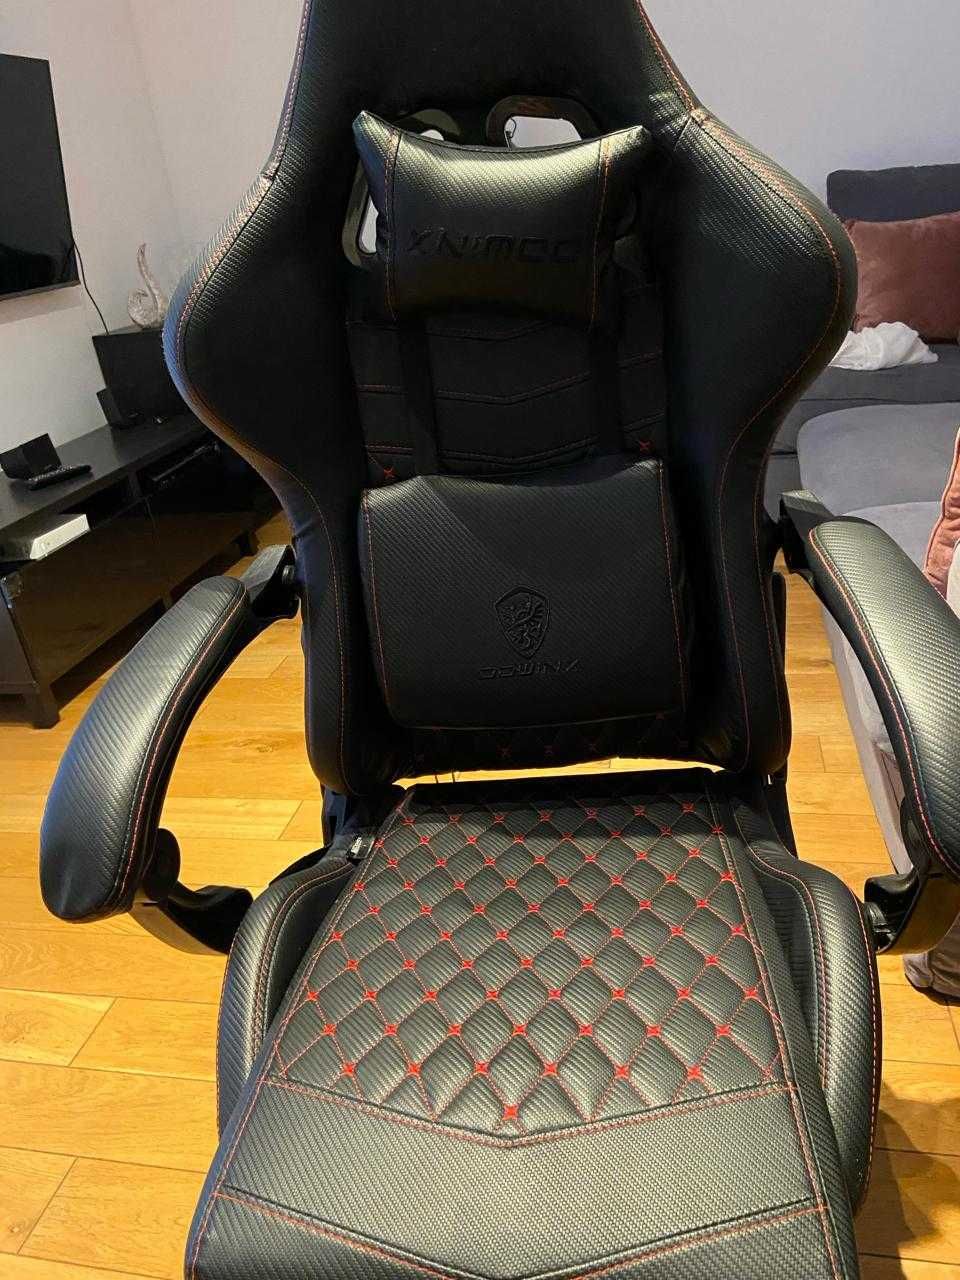 Krzesło do gier/biura Dowinx, ergonomiczne